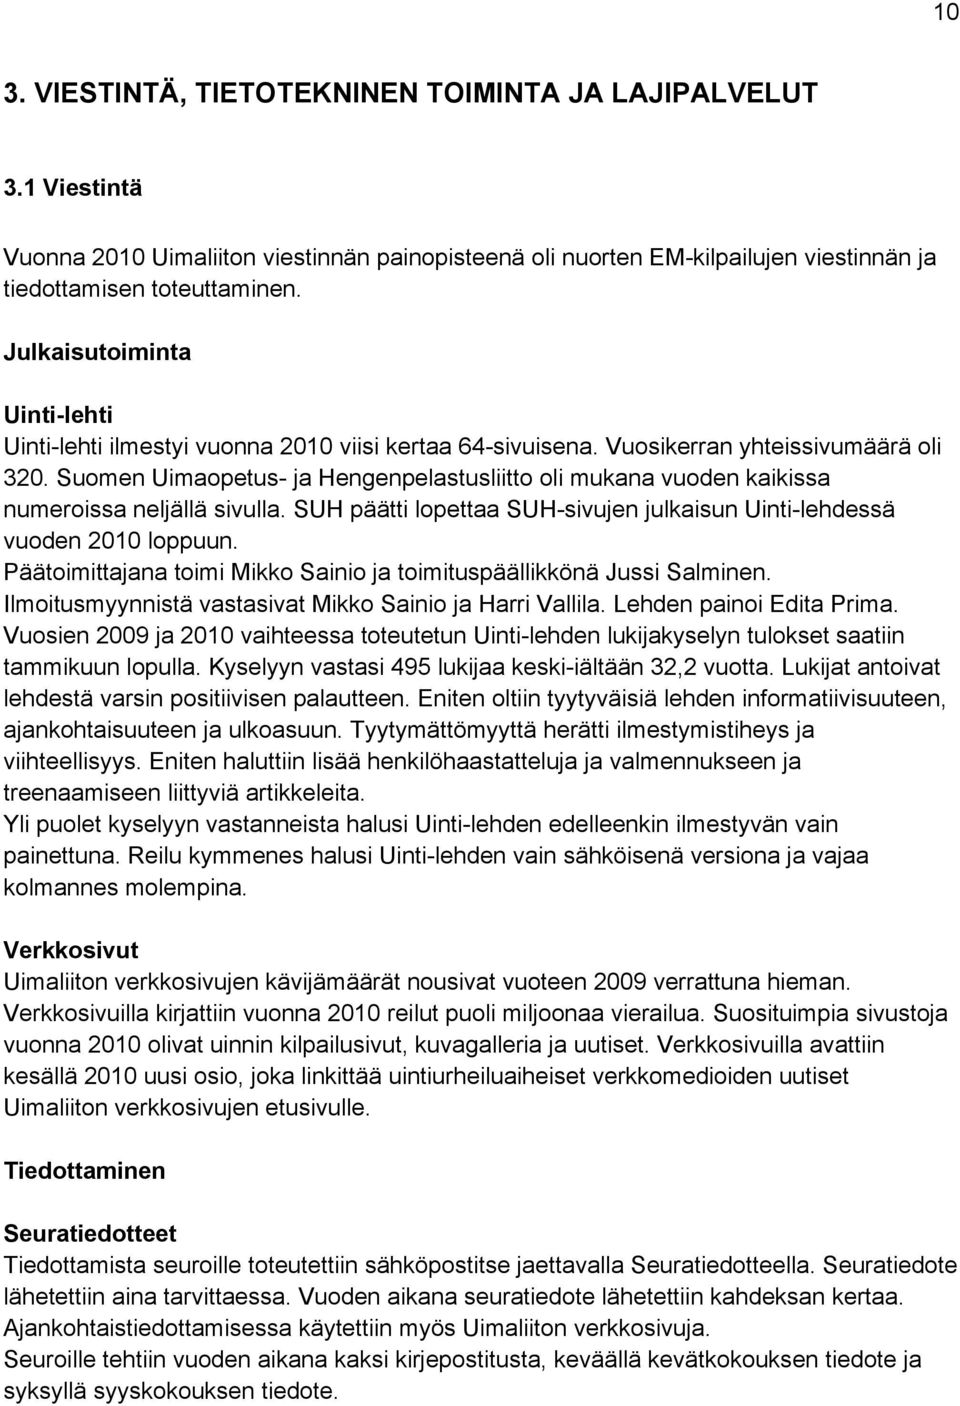 Suomen Uimaopetus- ja Hengenpelastusliitto oli mukana vuoden kaikissa numeroissa neljällä sivulla. SUH päätti lopettaa SUH-sivujen julkaisun Uinti-lehdessä vuoden 2010 loppuun.